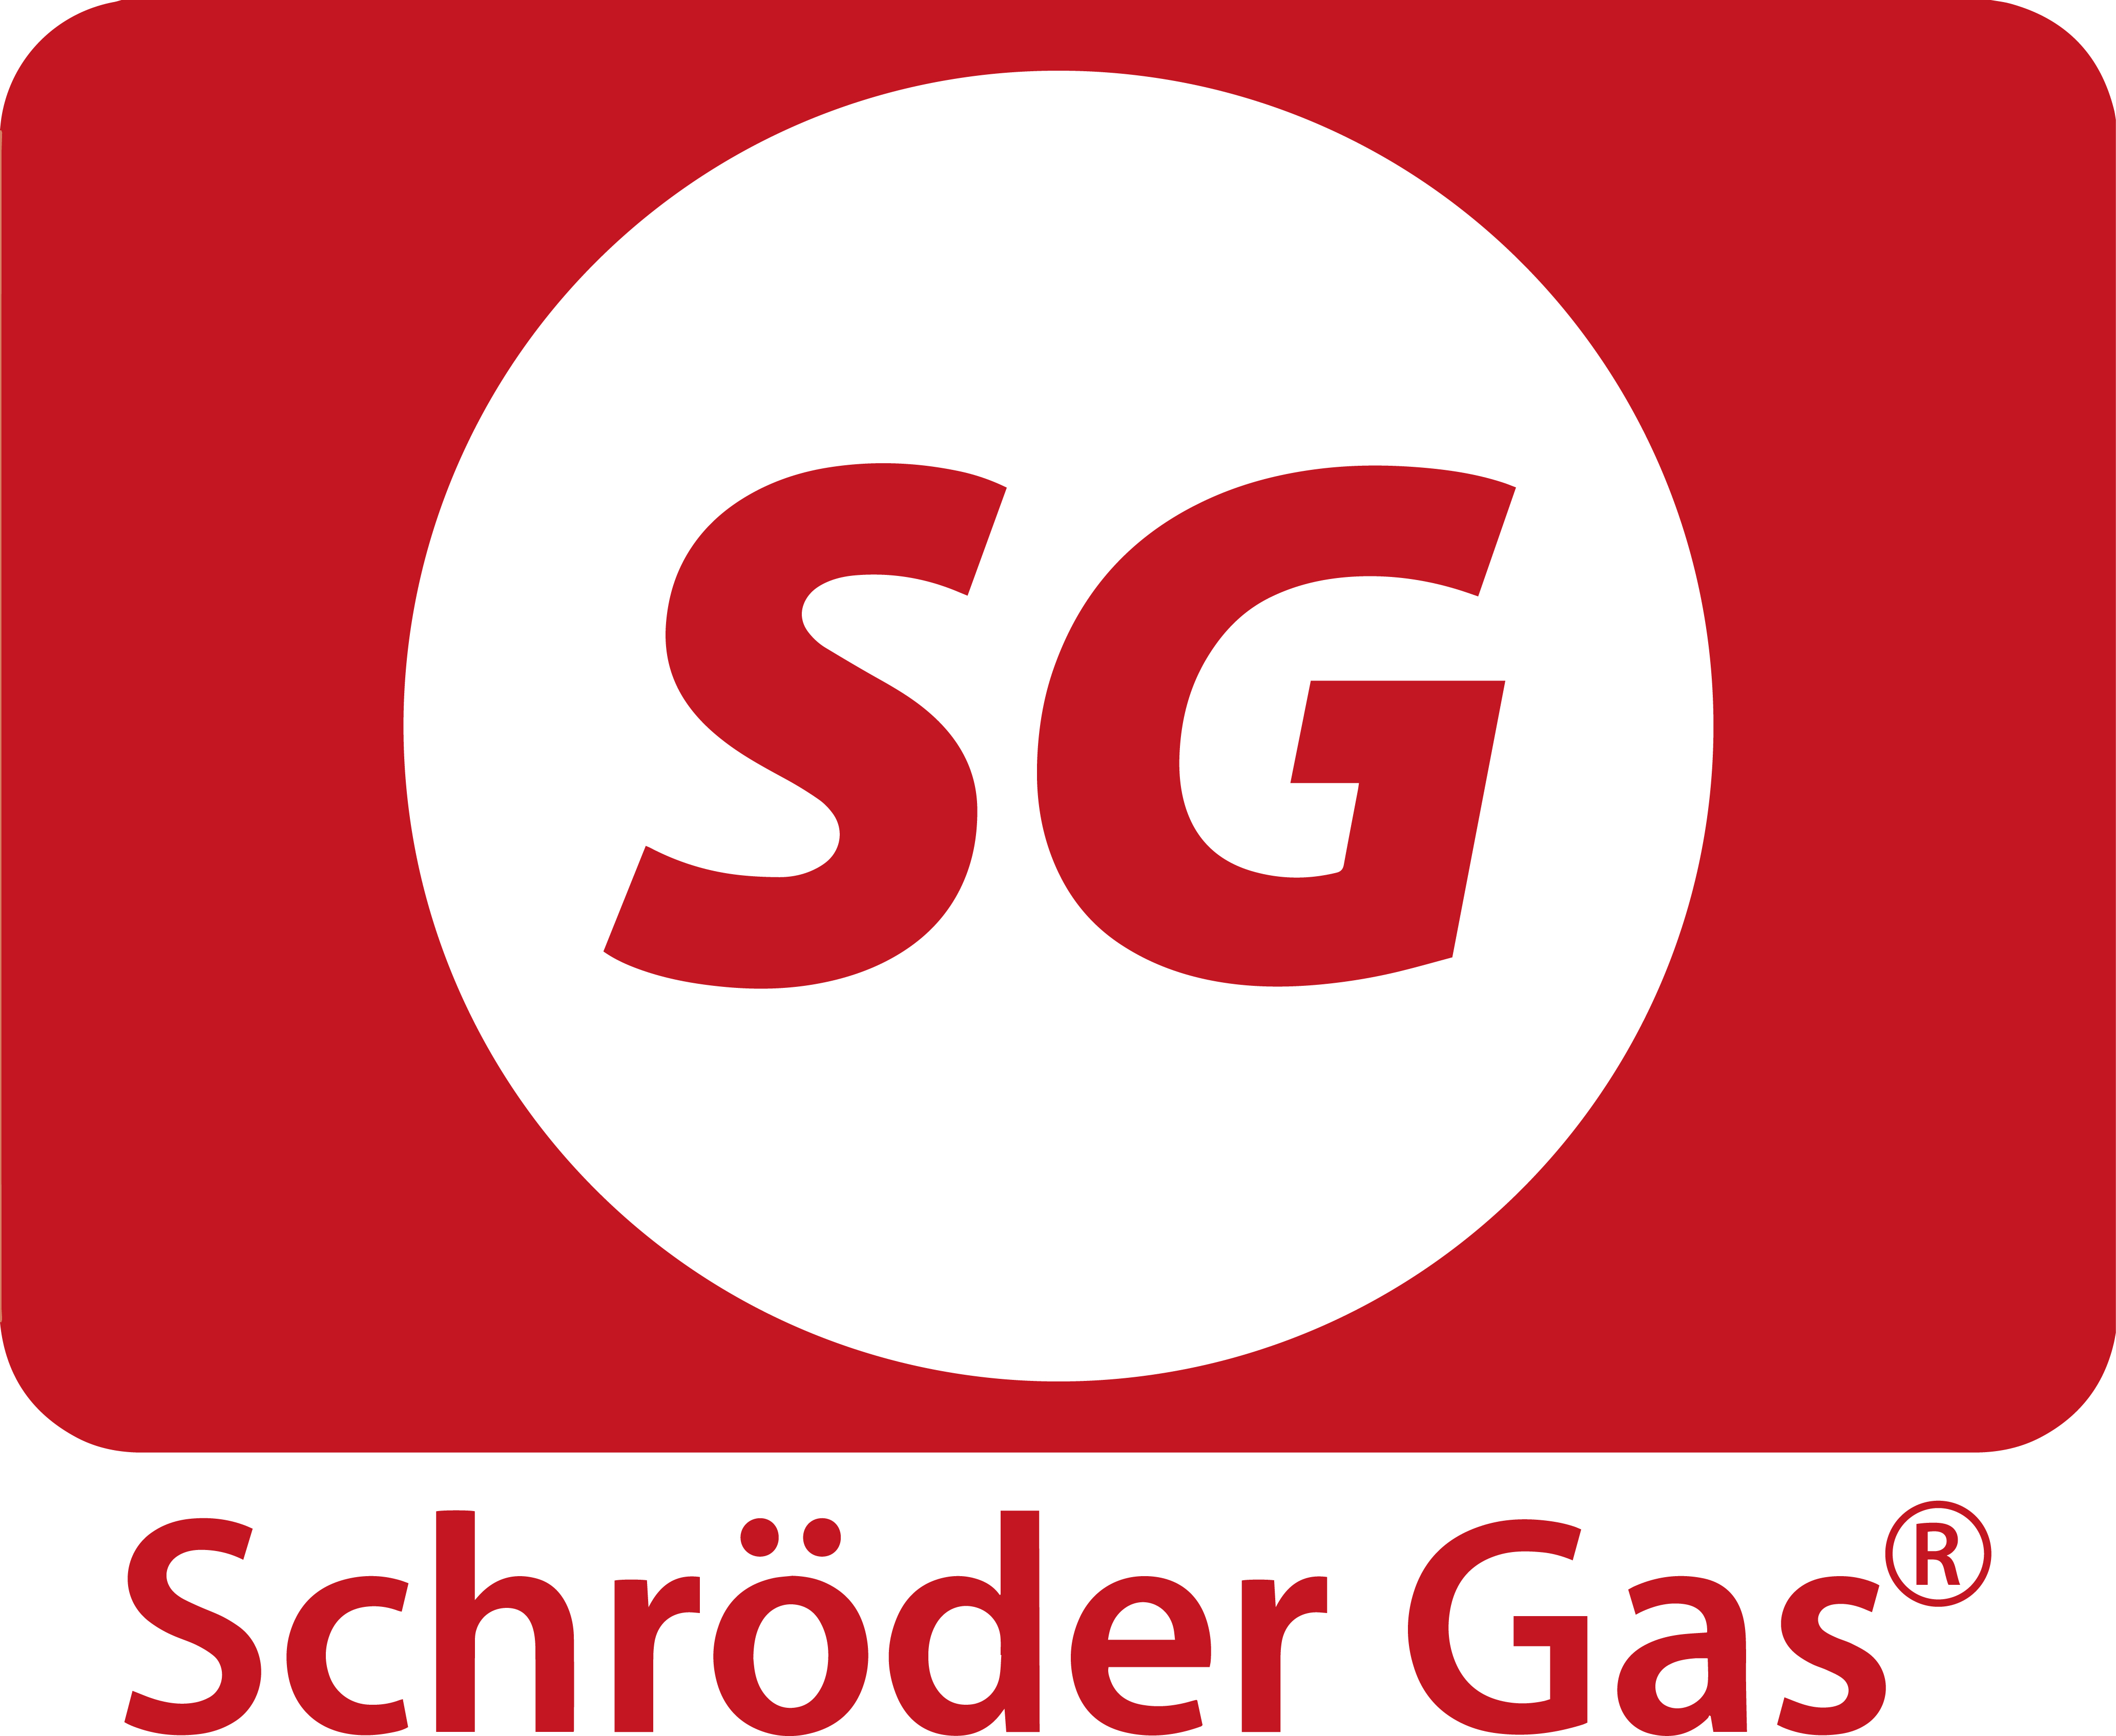 Schröder Gas GmbH & Co. KG - Energieversorger